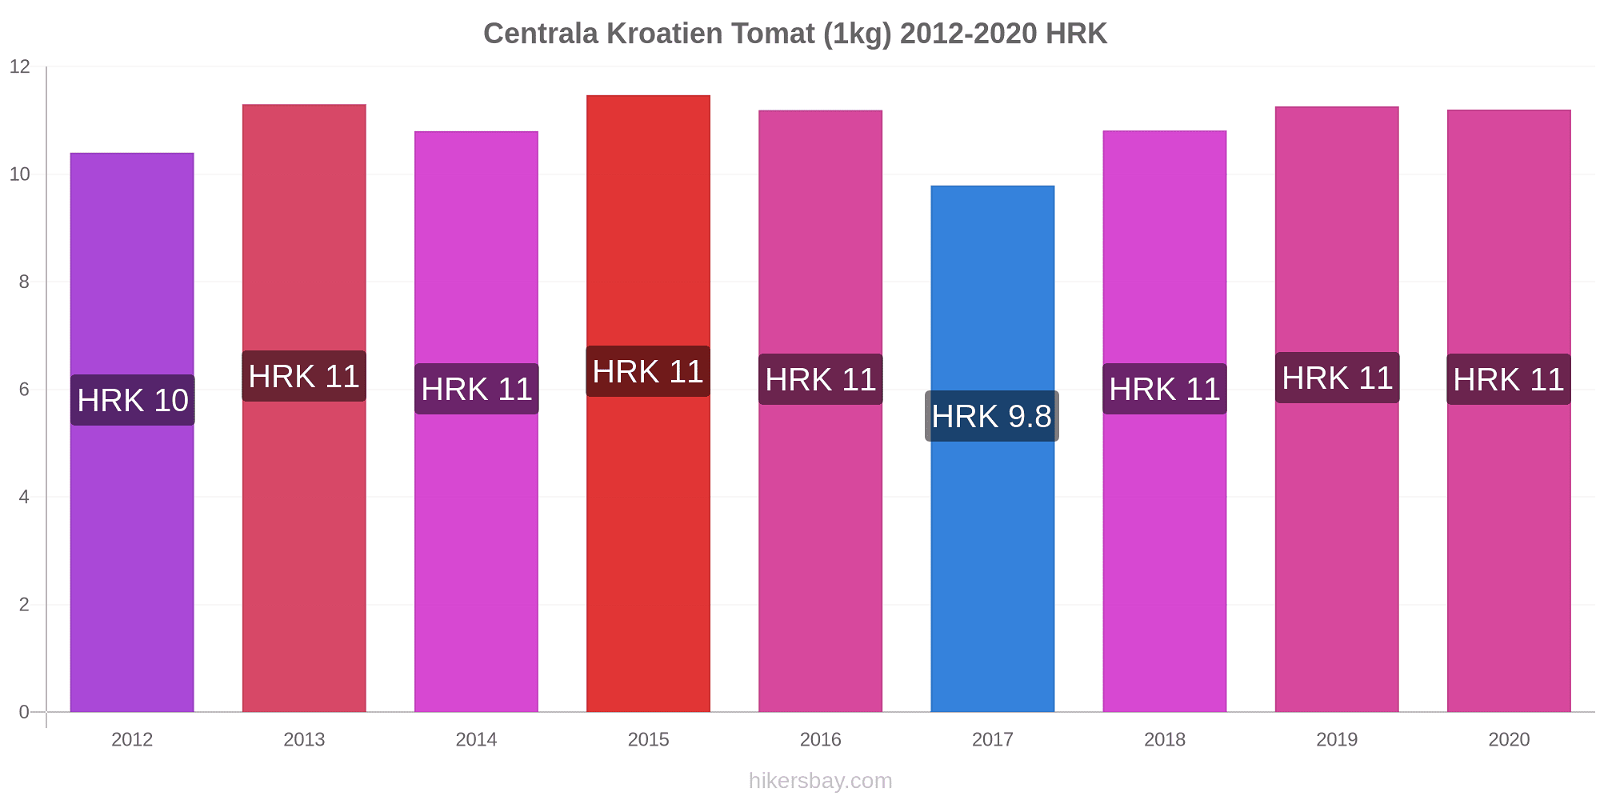 Centrala Kroatien prisförändringar Tomat (1kg) hikersbay.com